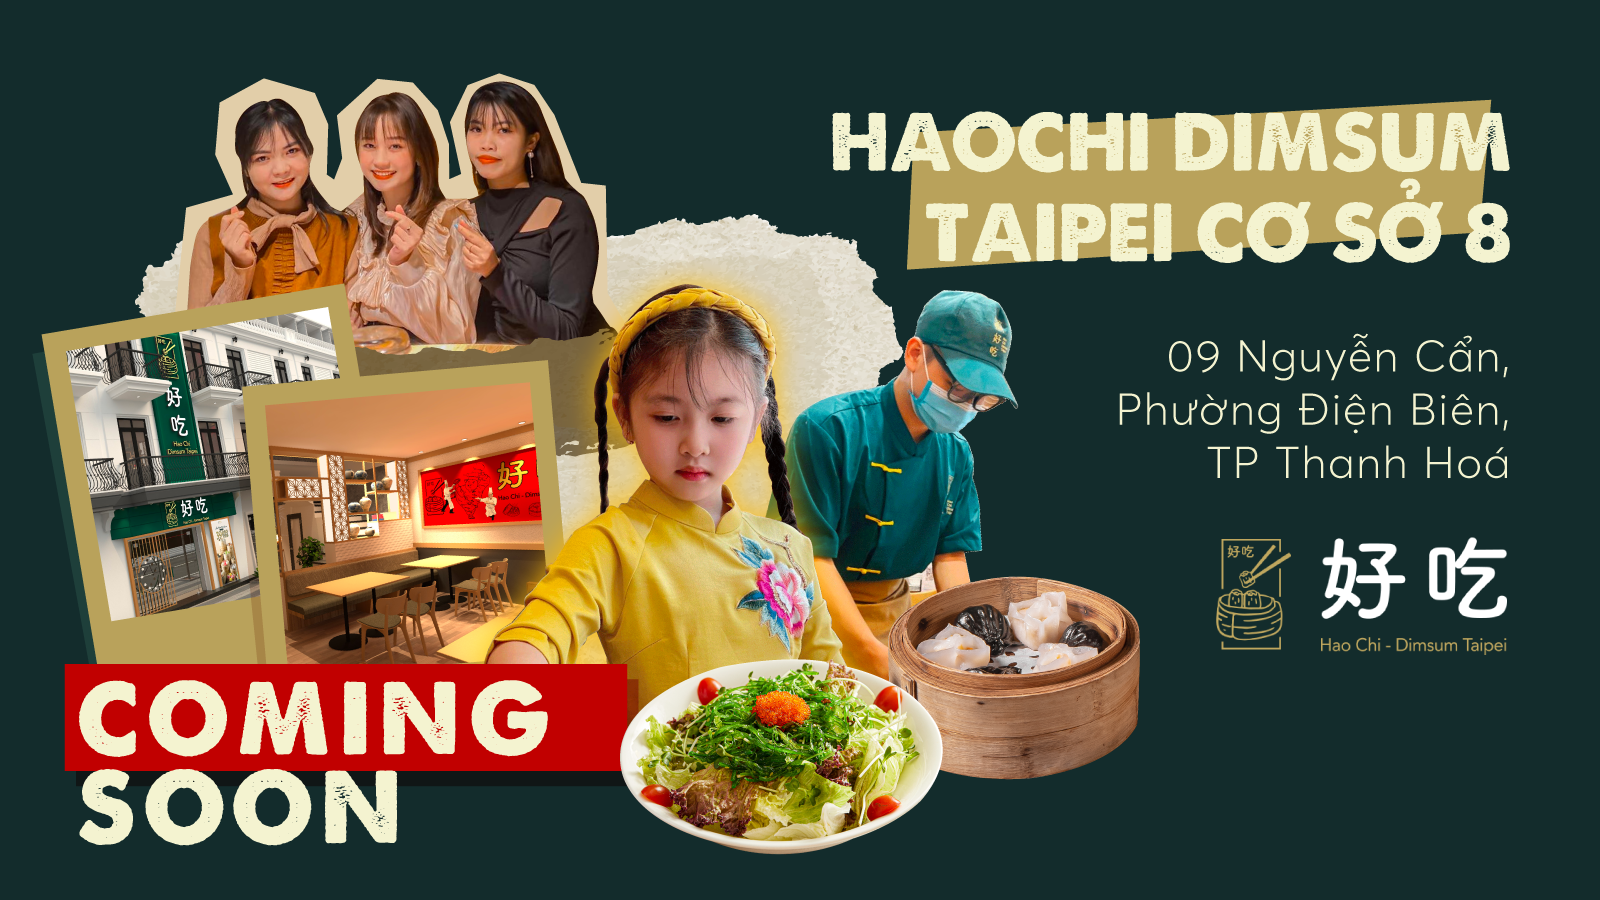 Hao Chi Dimsum cơ sở 8 tại 09 Nguyễn Cẩn, Phường Điện Biên, TP Thanh Hoá